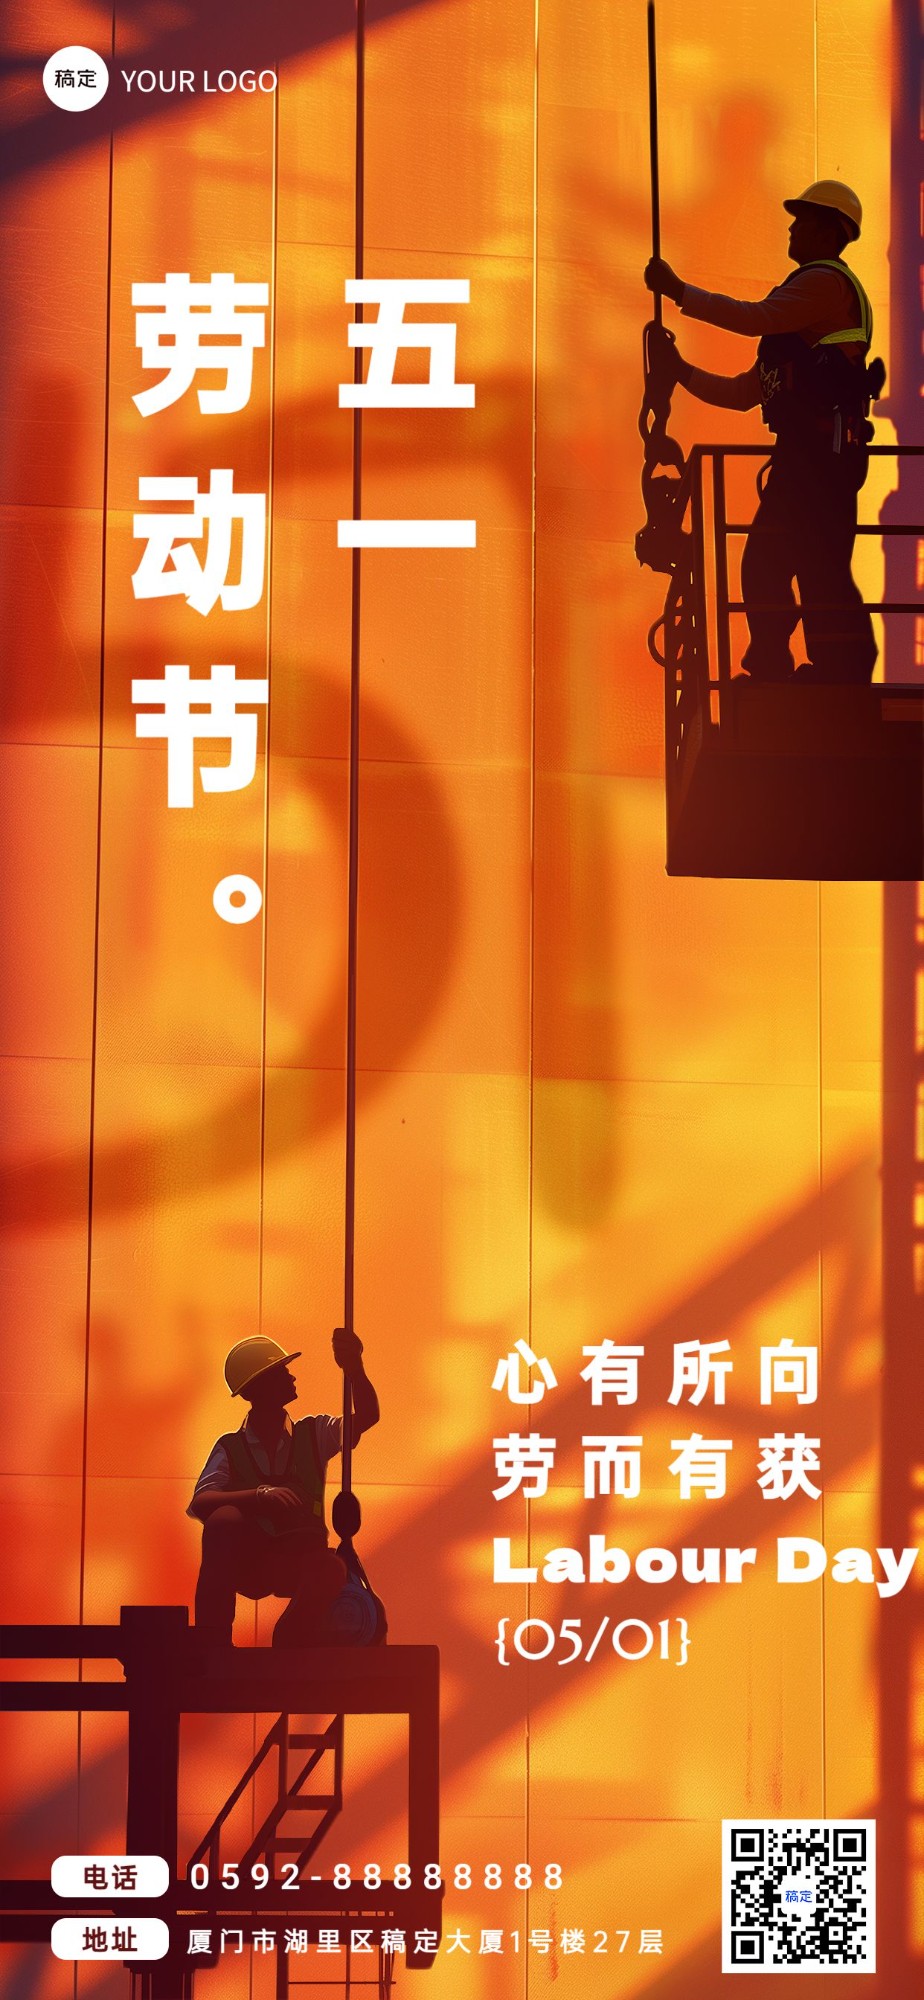 企业五一劳动节节日祝福剪影风全屏竖版海报AIGC预览效果